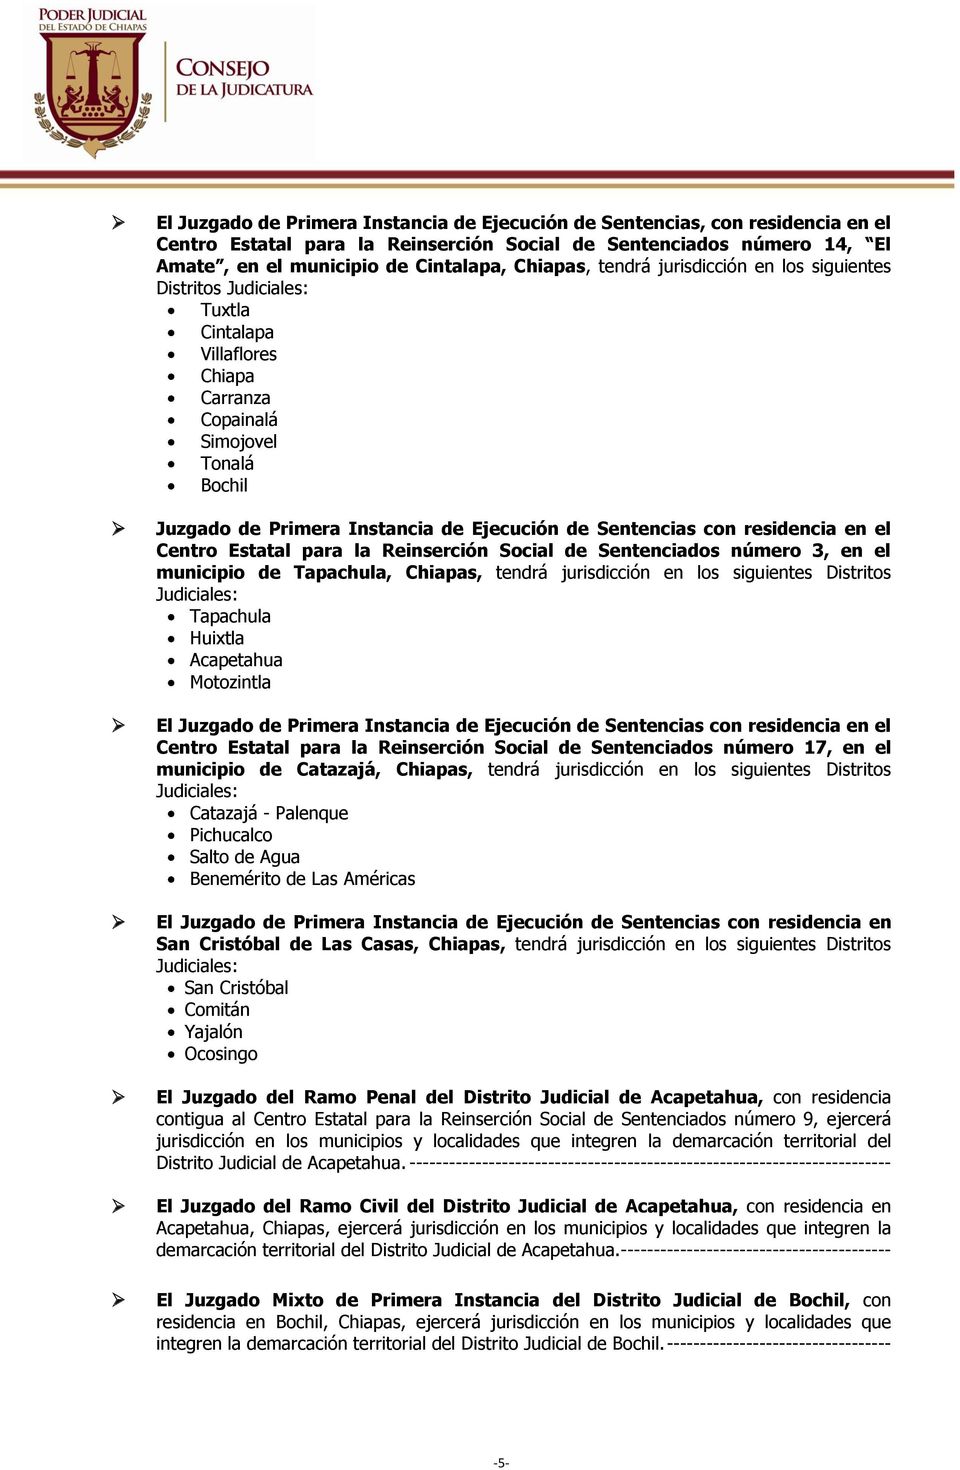 residencia en el Centro Estatal para la Reinserción Social de Sentenciados número 3, en el municipio de Tapachula, Chiapas, tendrá jurisdicción en los siguientes Distritos Judiciales: Tapachula